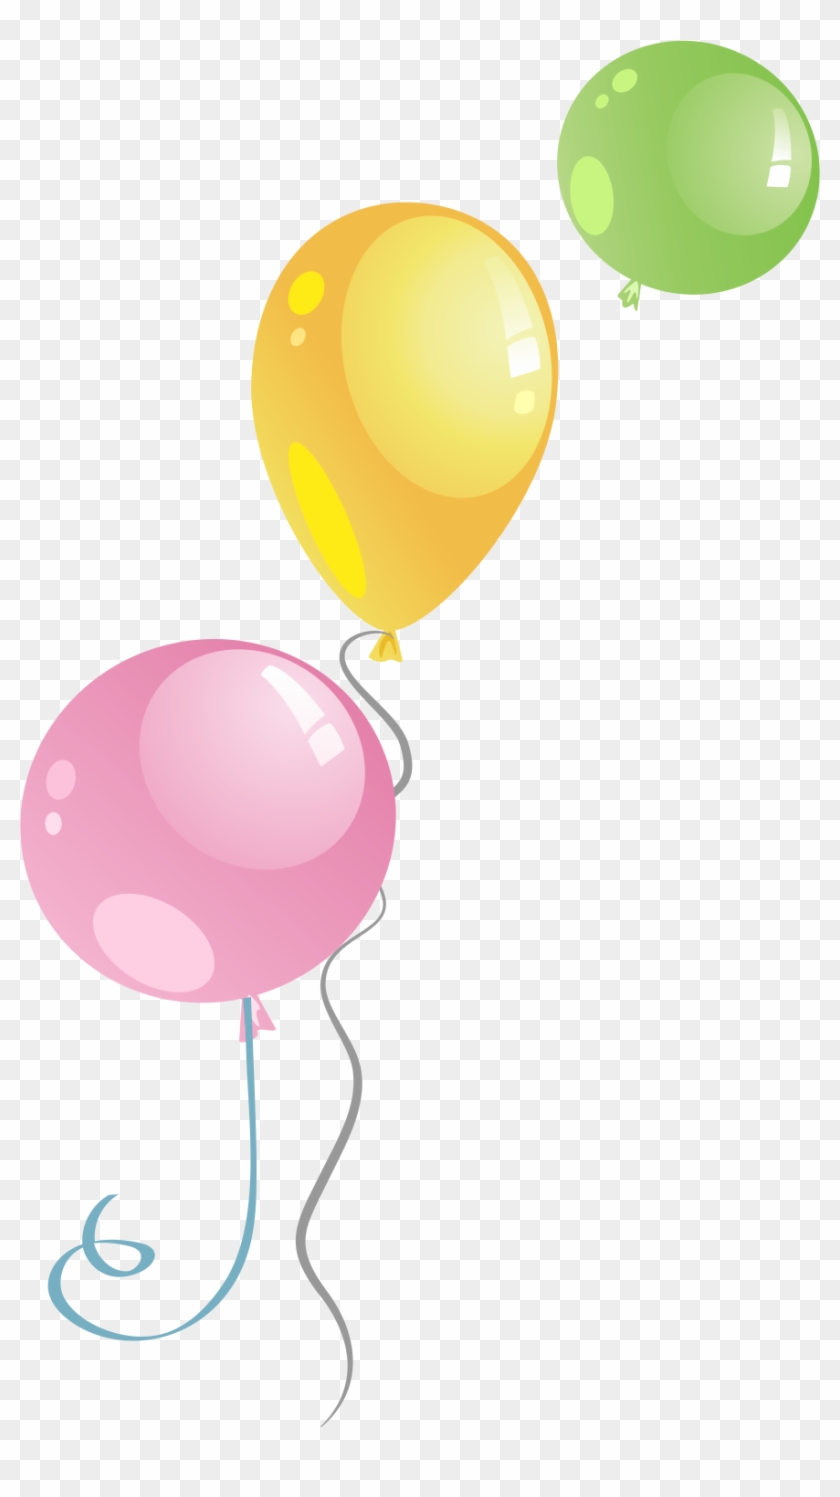 Balloon Euclidean Vector Clip Art - Balloon Euclidean Vector Clip Art #275937